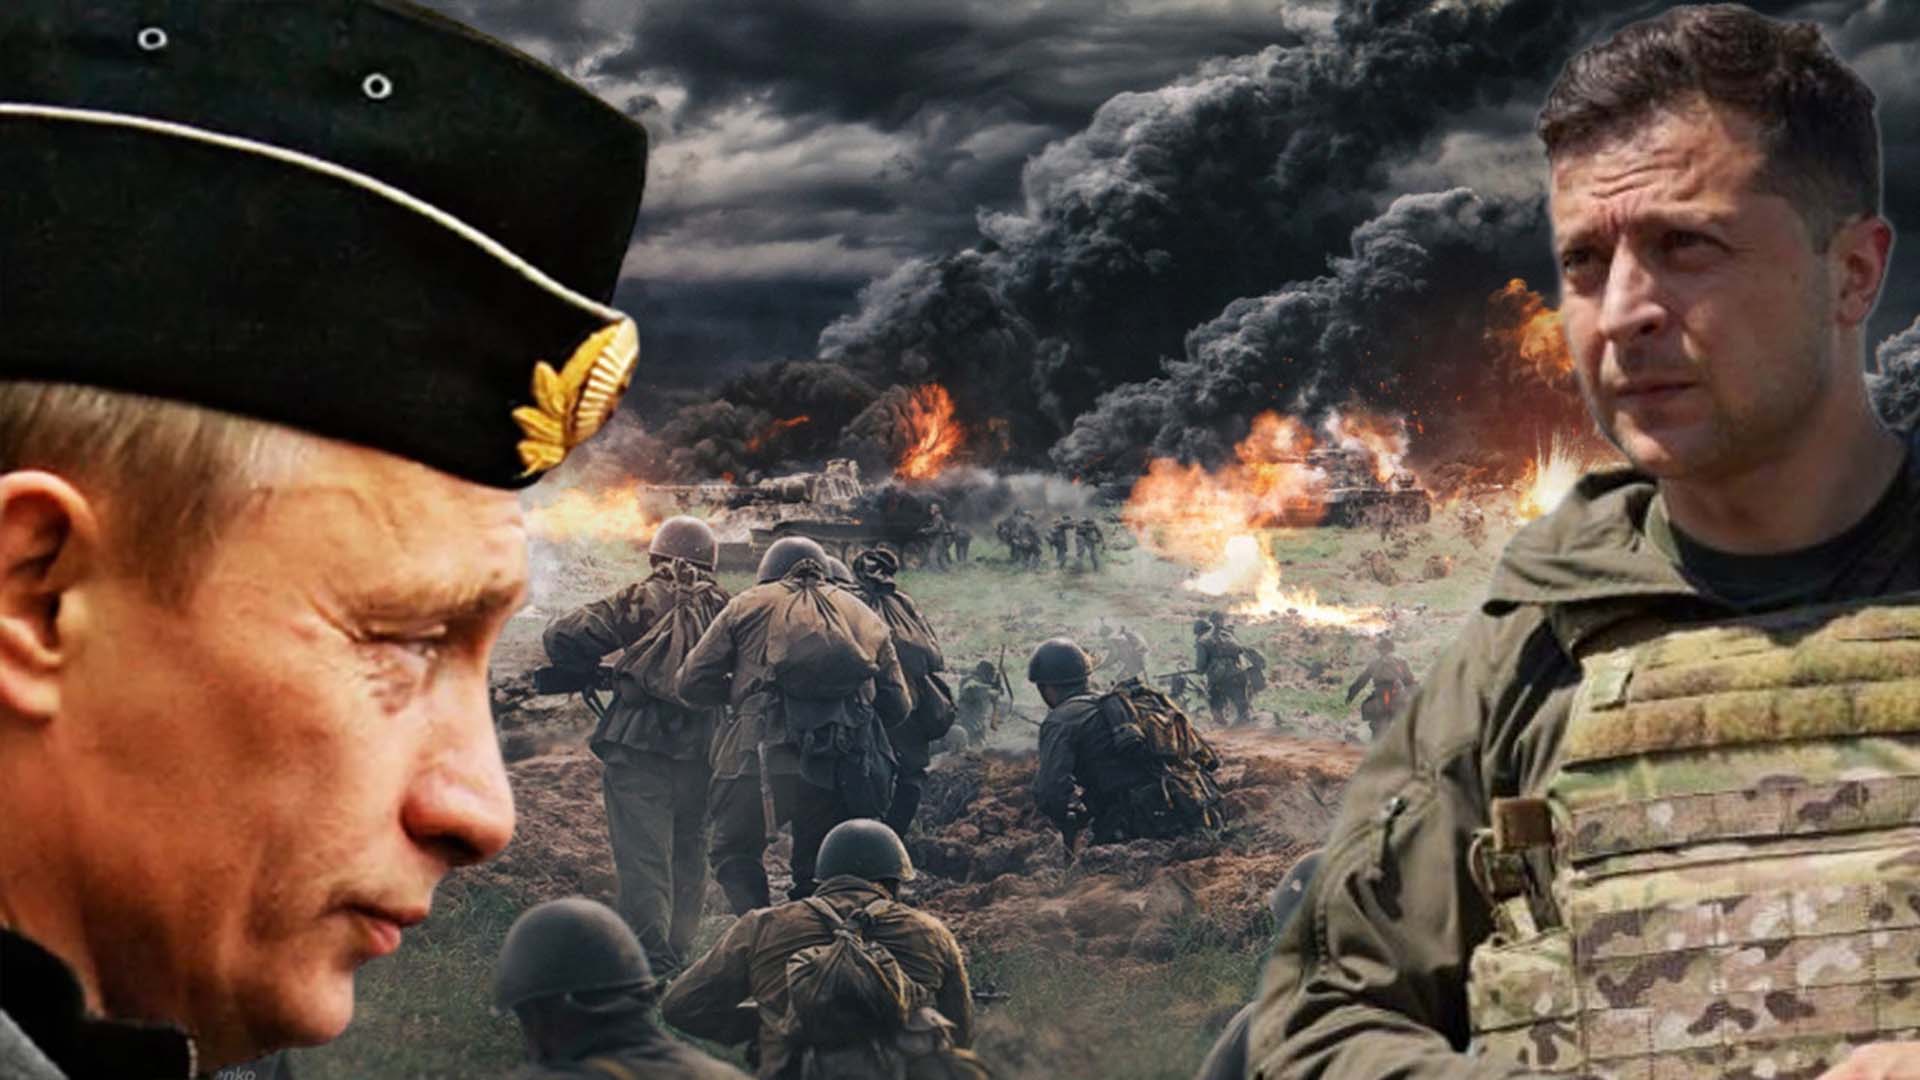 Rusya, Ukrayna'ya neden saldırıyor? Rusya - Ukrayna savaşı başladı mı? Savaş  mı çıktı son dakika 2022?